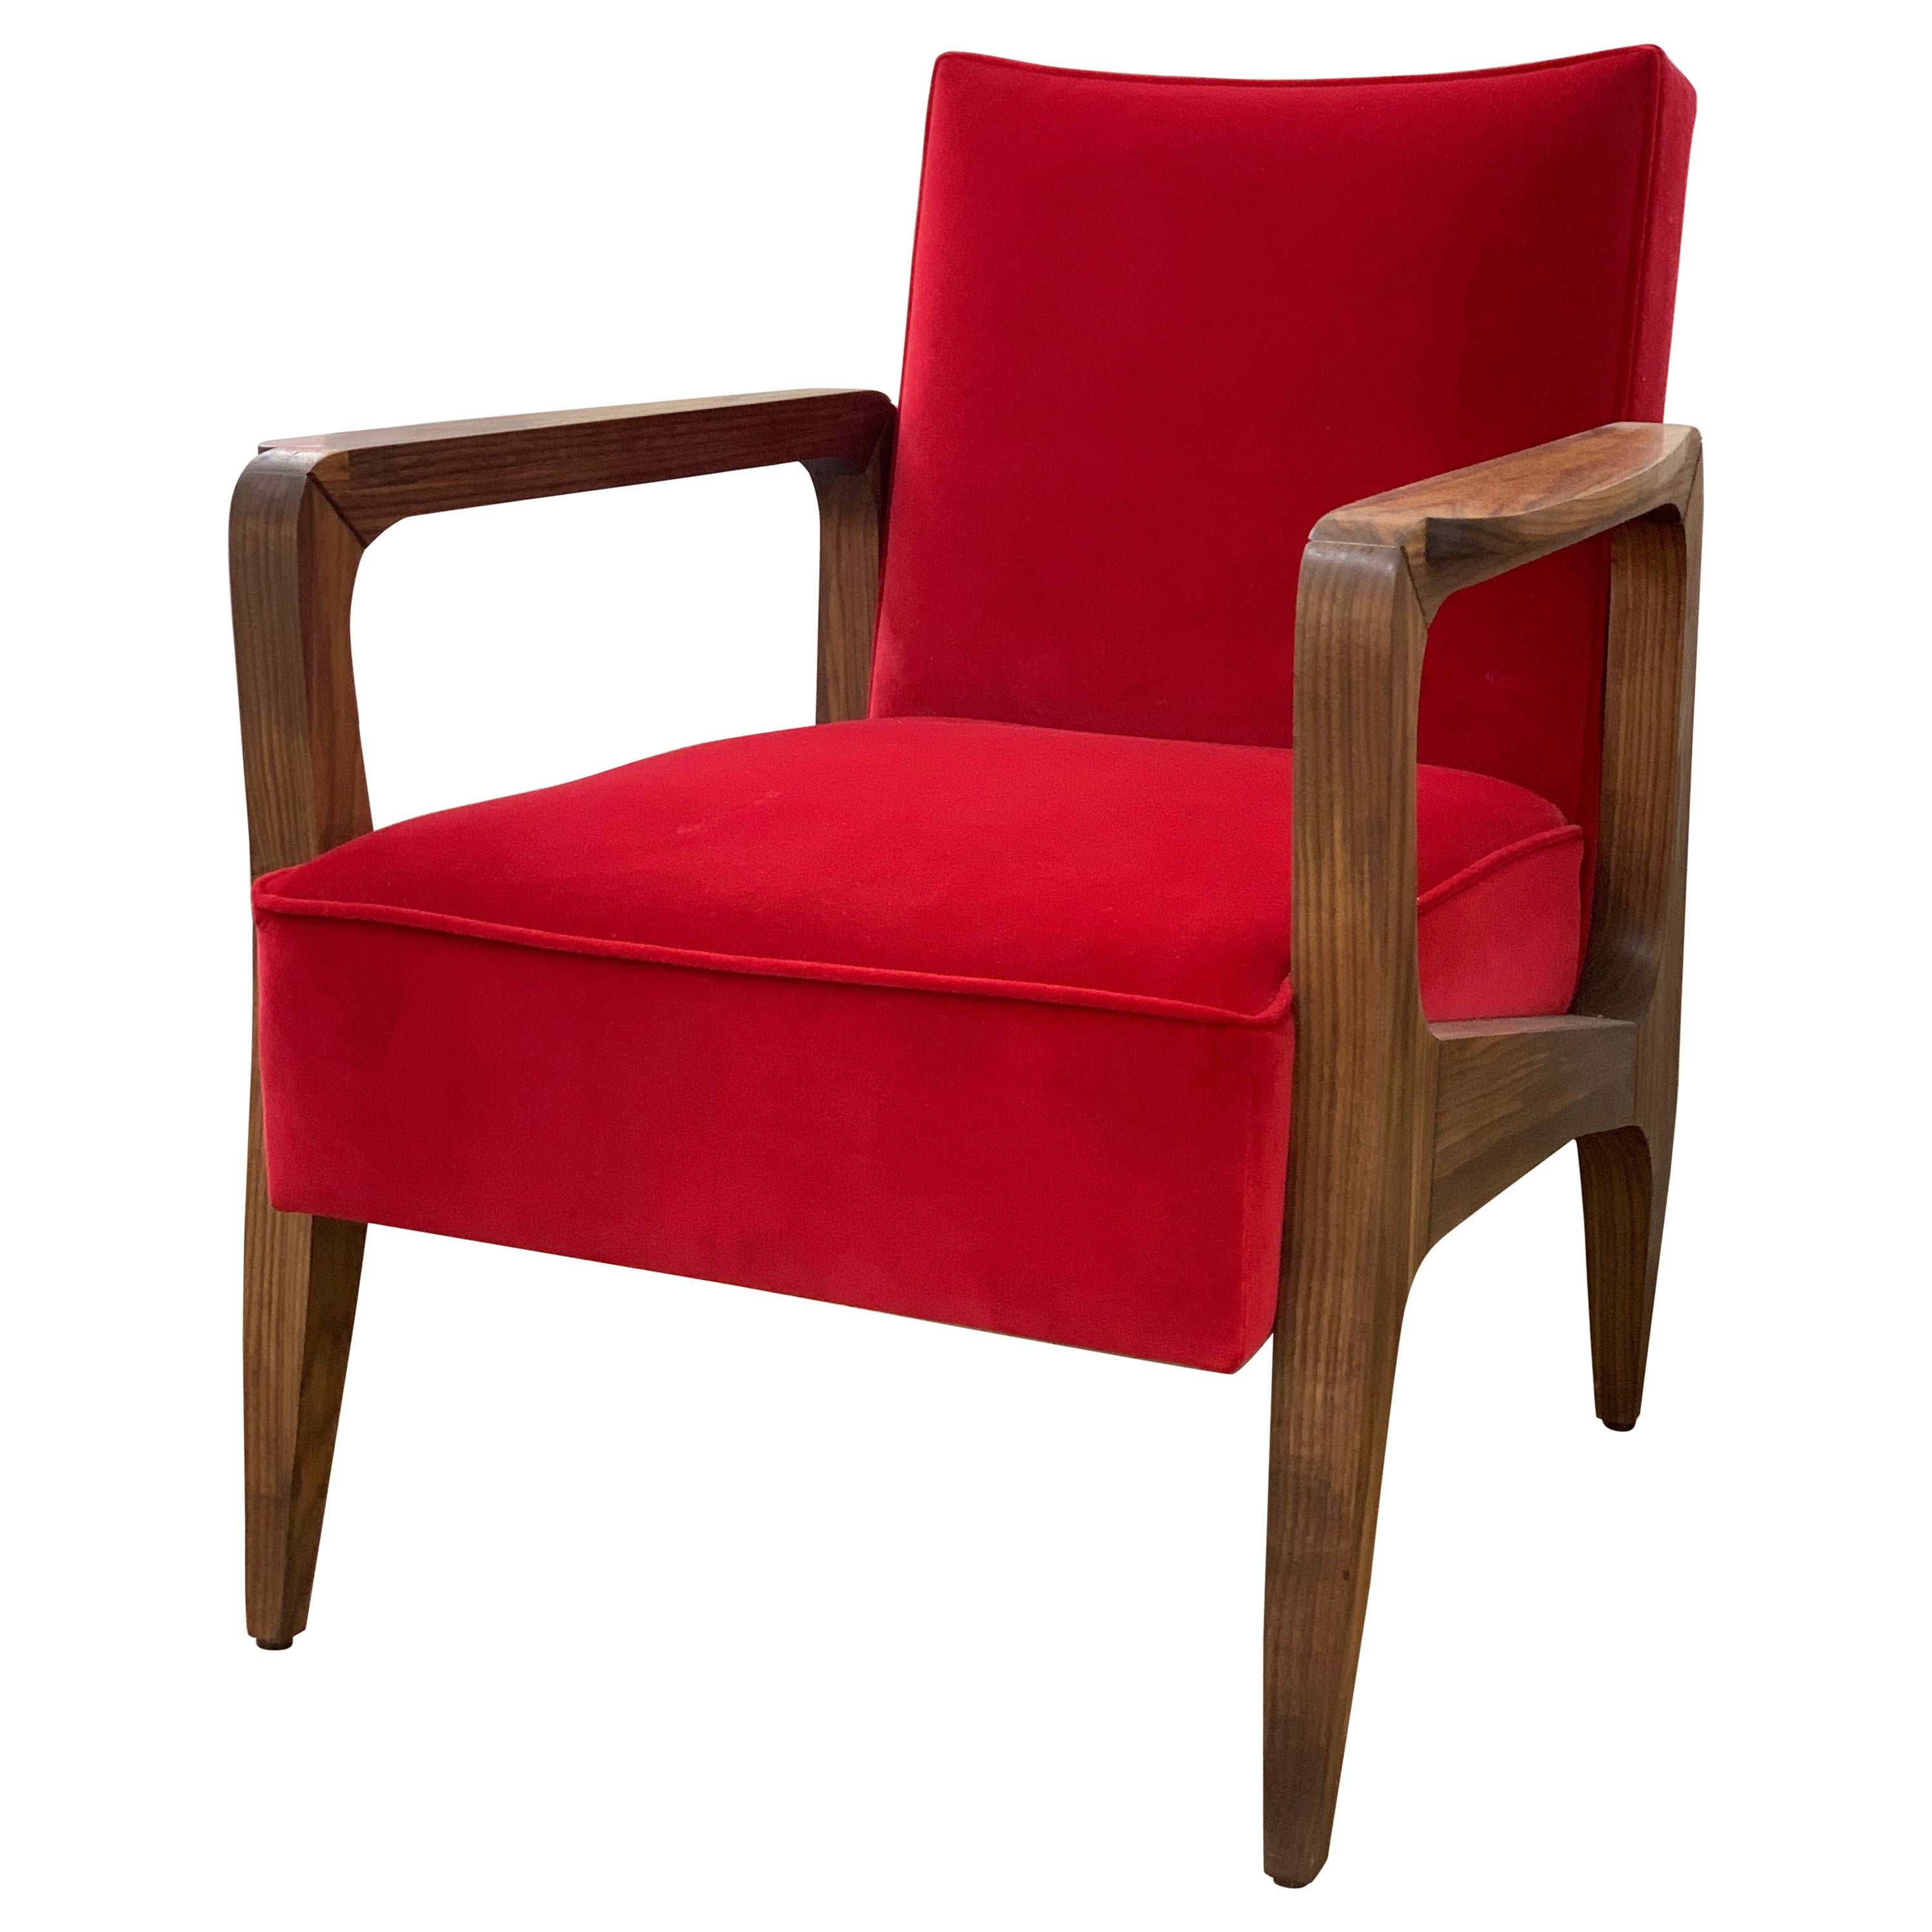 Atena-Sessel aus schwarzem amerikanischem Nussbaum und rotem Opernsamt